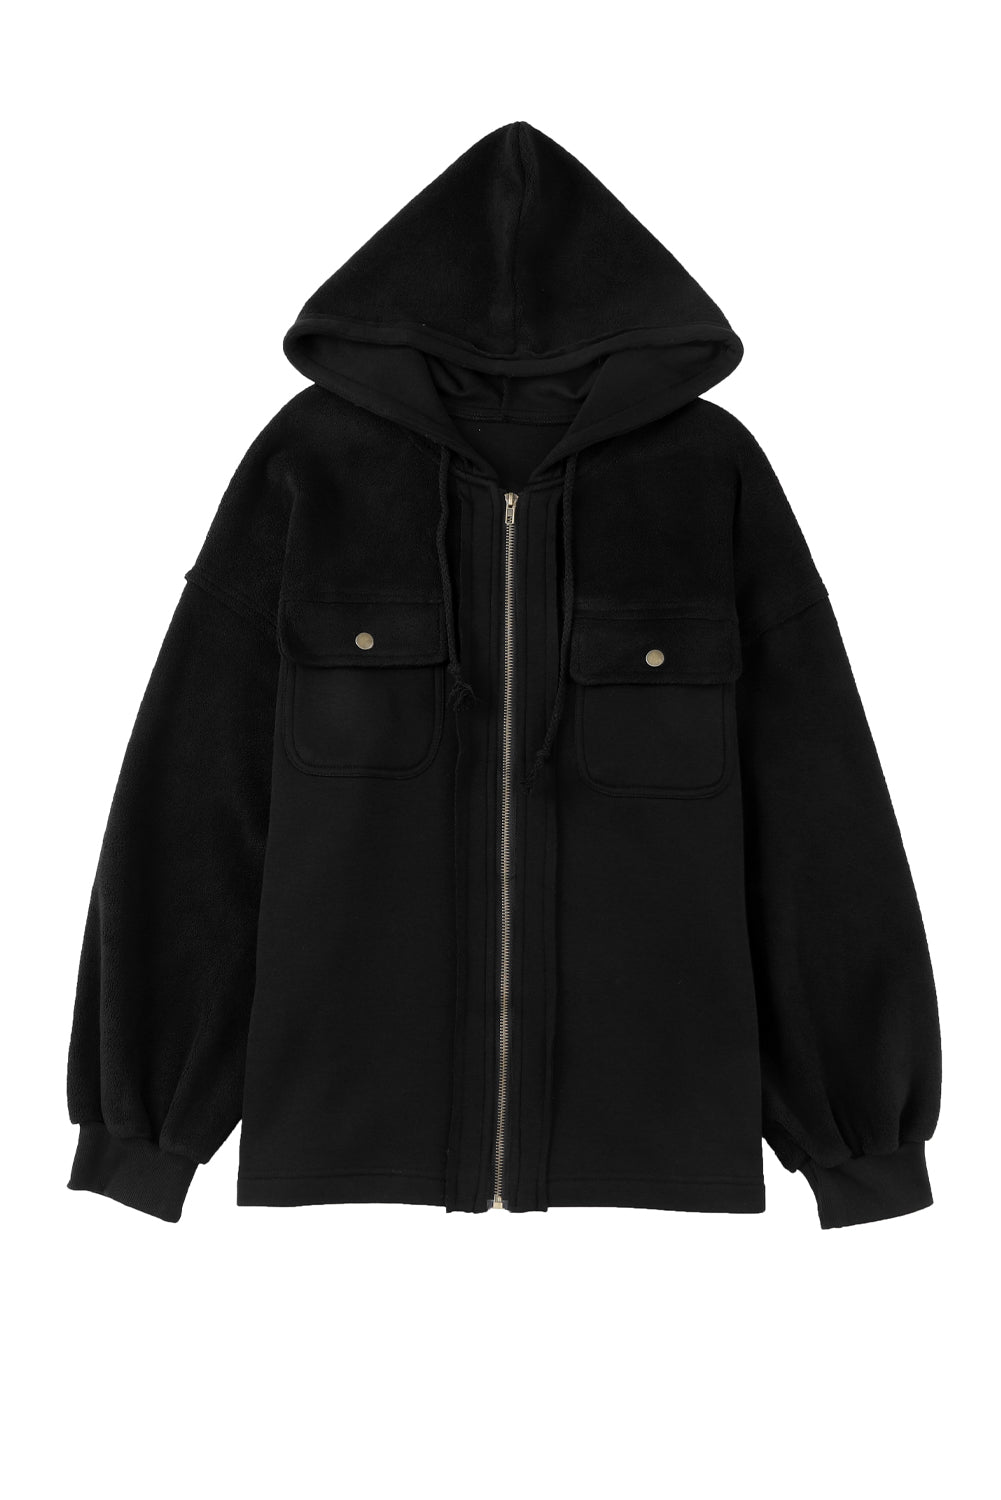 Black Bishop Sleeve Zip Up Hoodie Jacket with Flap Pockets